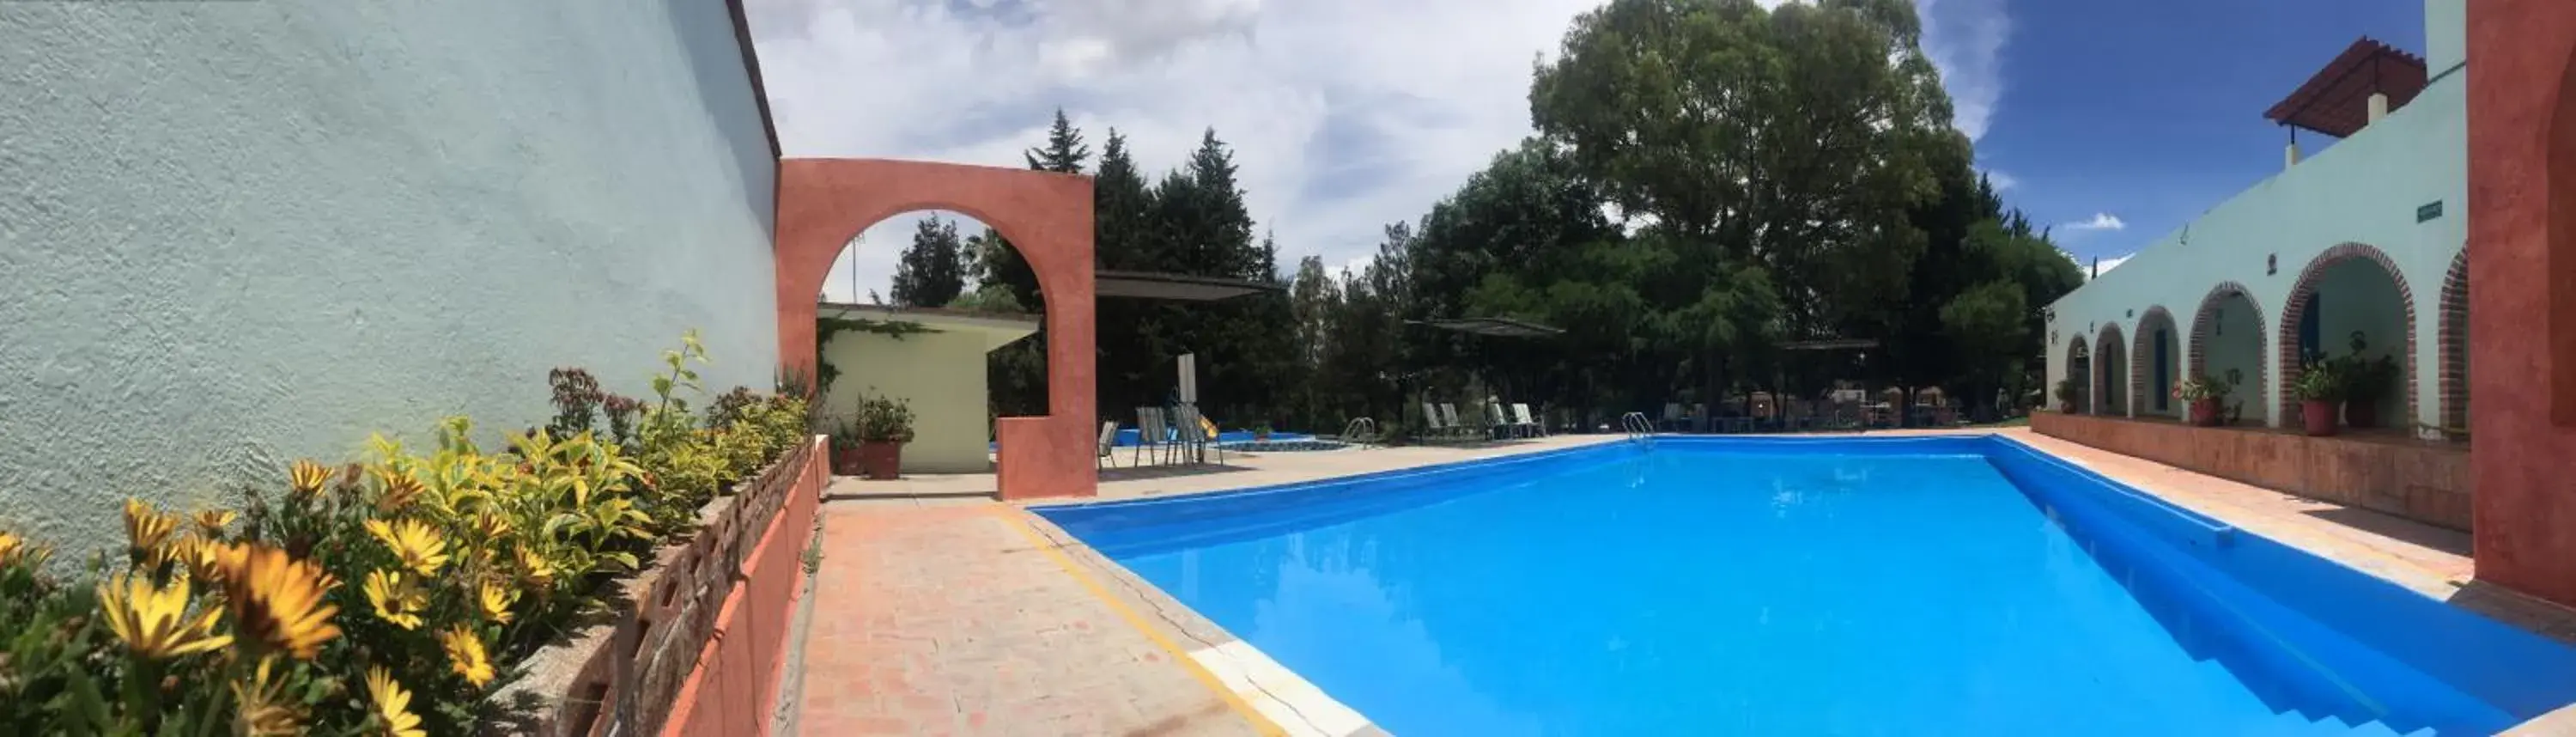 Swimming Pool in Hotel San Ramon